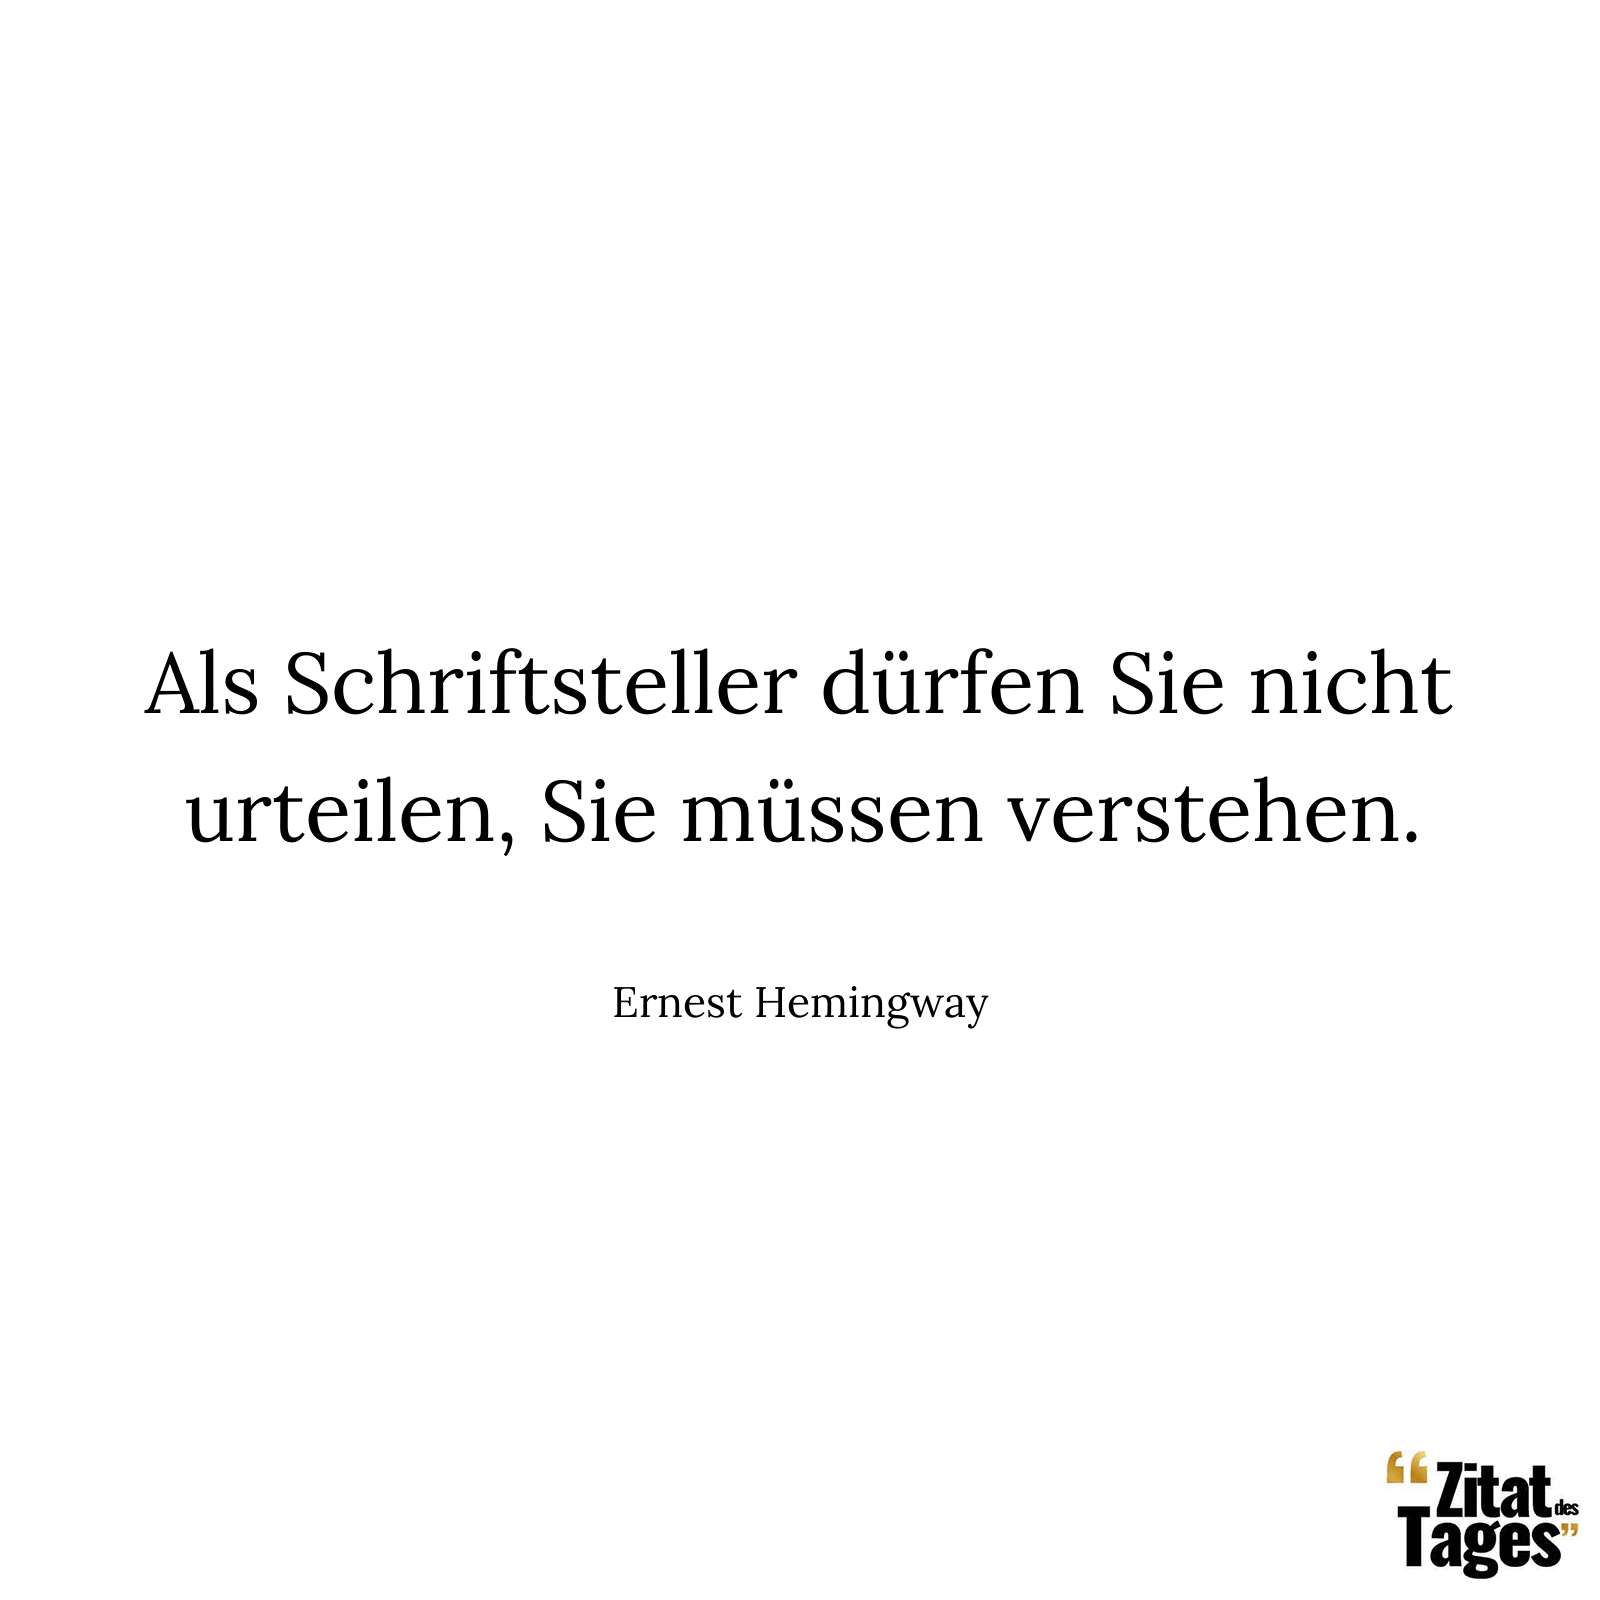 Als Schriftsteller dürfen Sie nicht urteilen, Sie müssen verstehen. - Ernest Hemingway